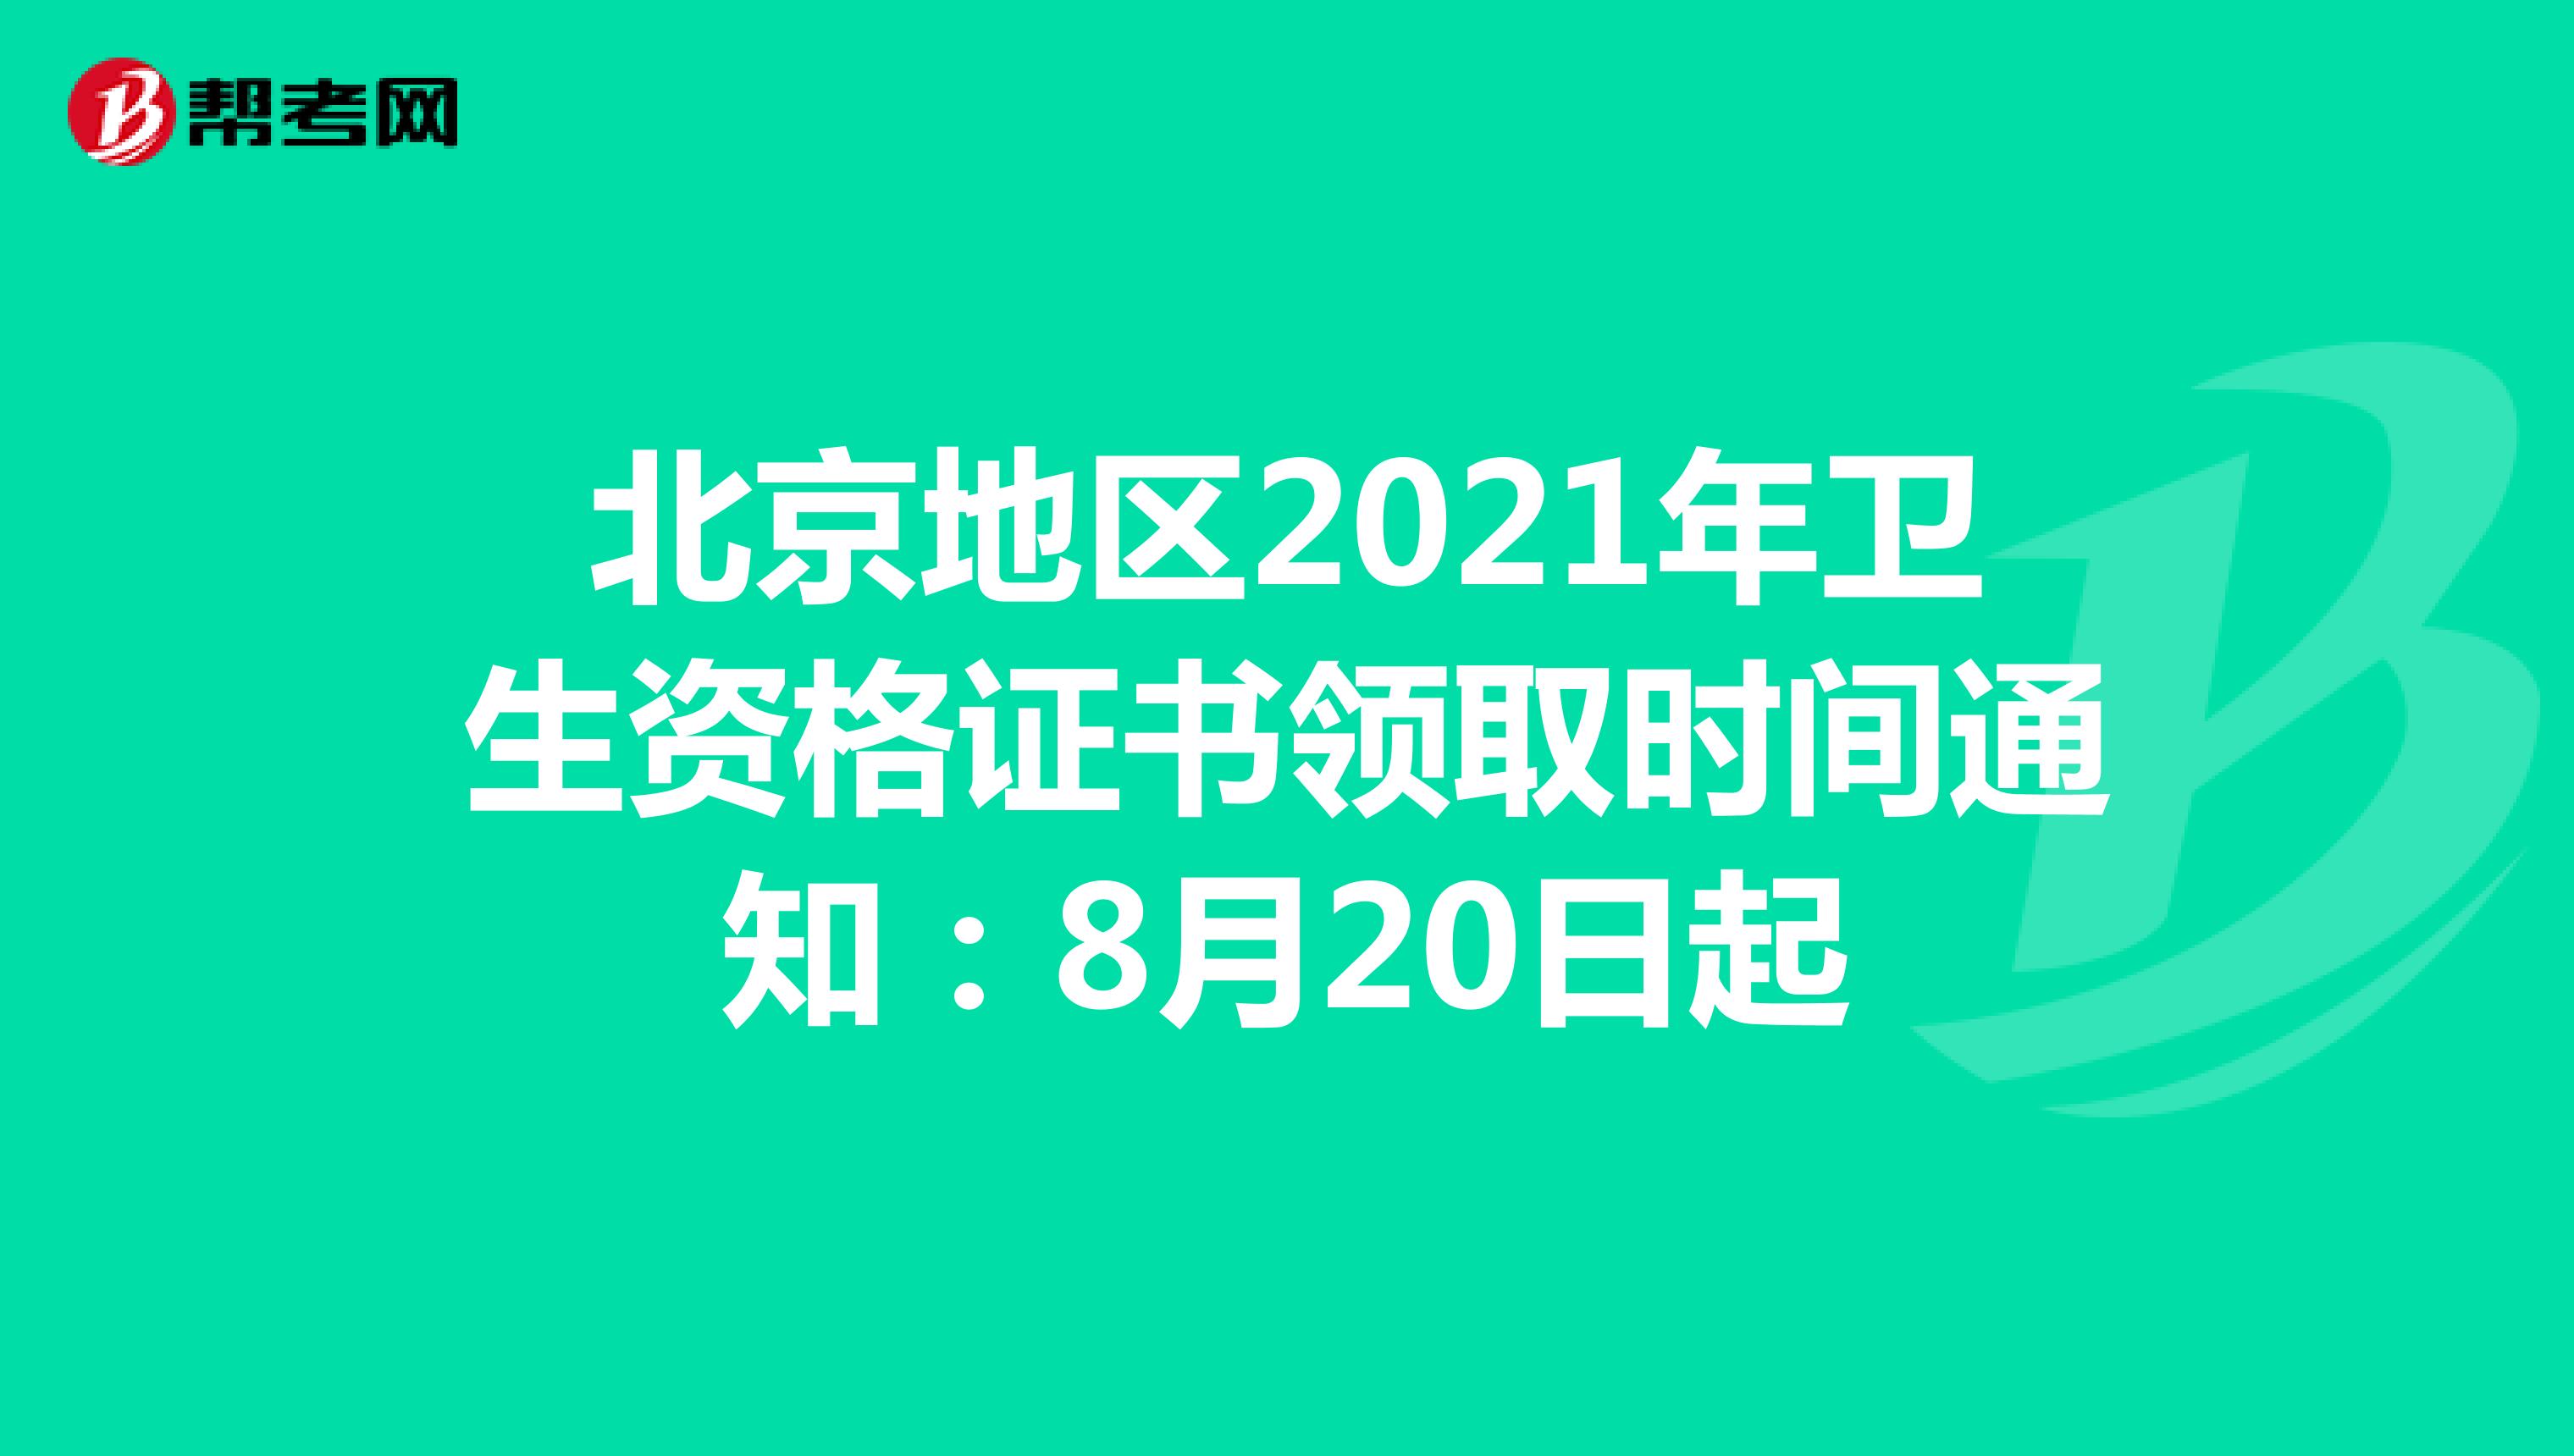 北京地区2021年卫生资格证书领取时间通知：8月20日起